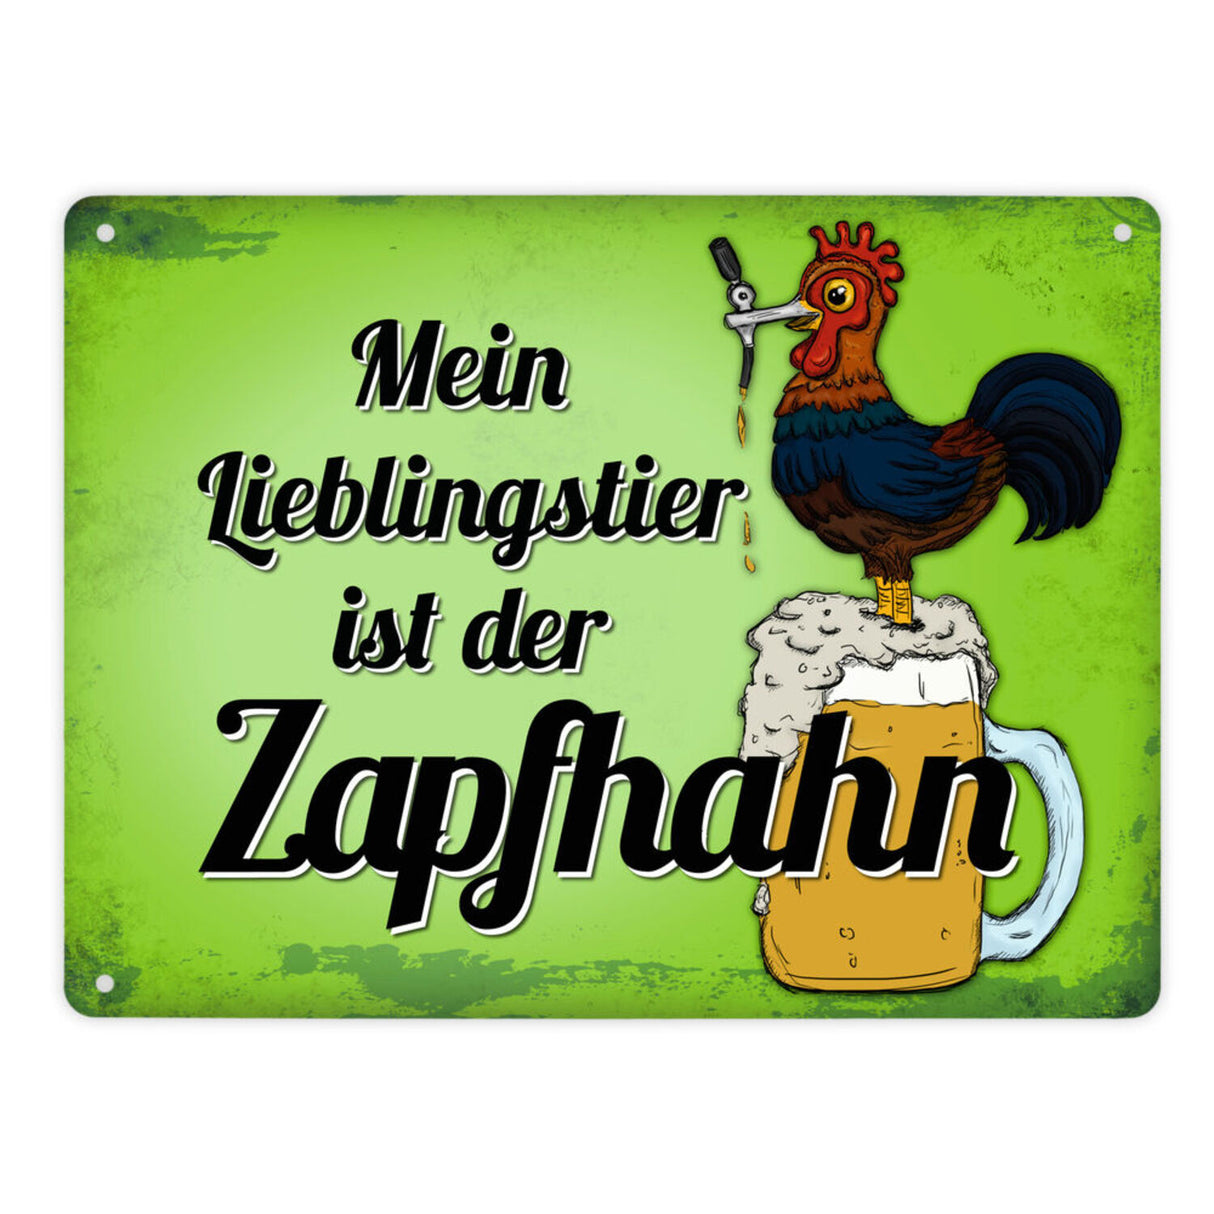 Mein Lieblingstier ist der Zapfhahn Metallschild mit Bier Motiv Bar Kneipe Hahn